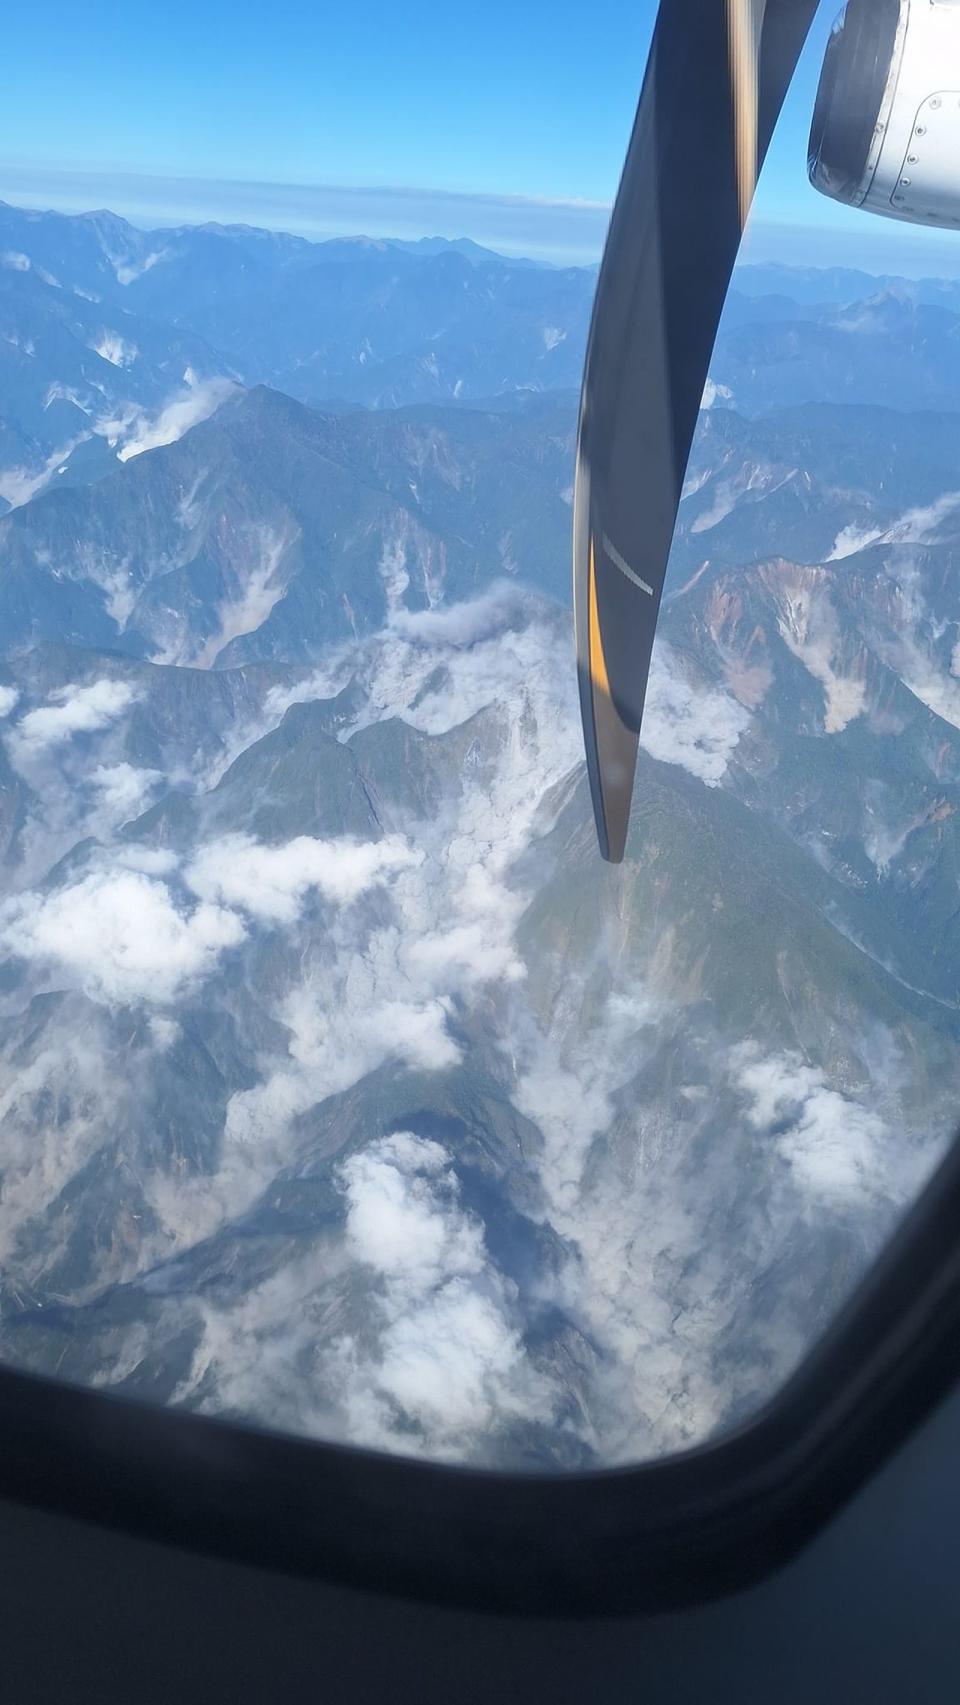 3日上午地震當下，一位在空中的旅客拍攝下方山群山崩的瞬間，畫面引起網友熱議。（翻攝自臉書社團「爆料公社」）